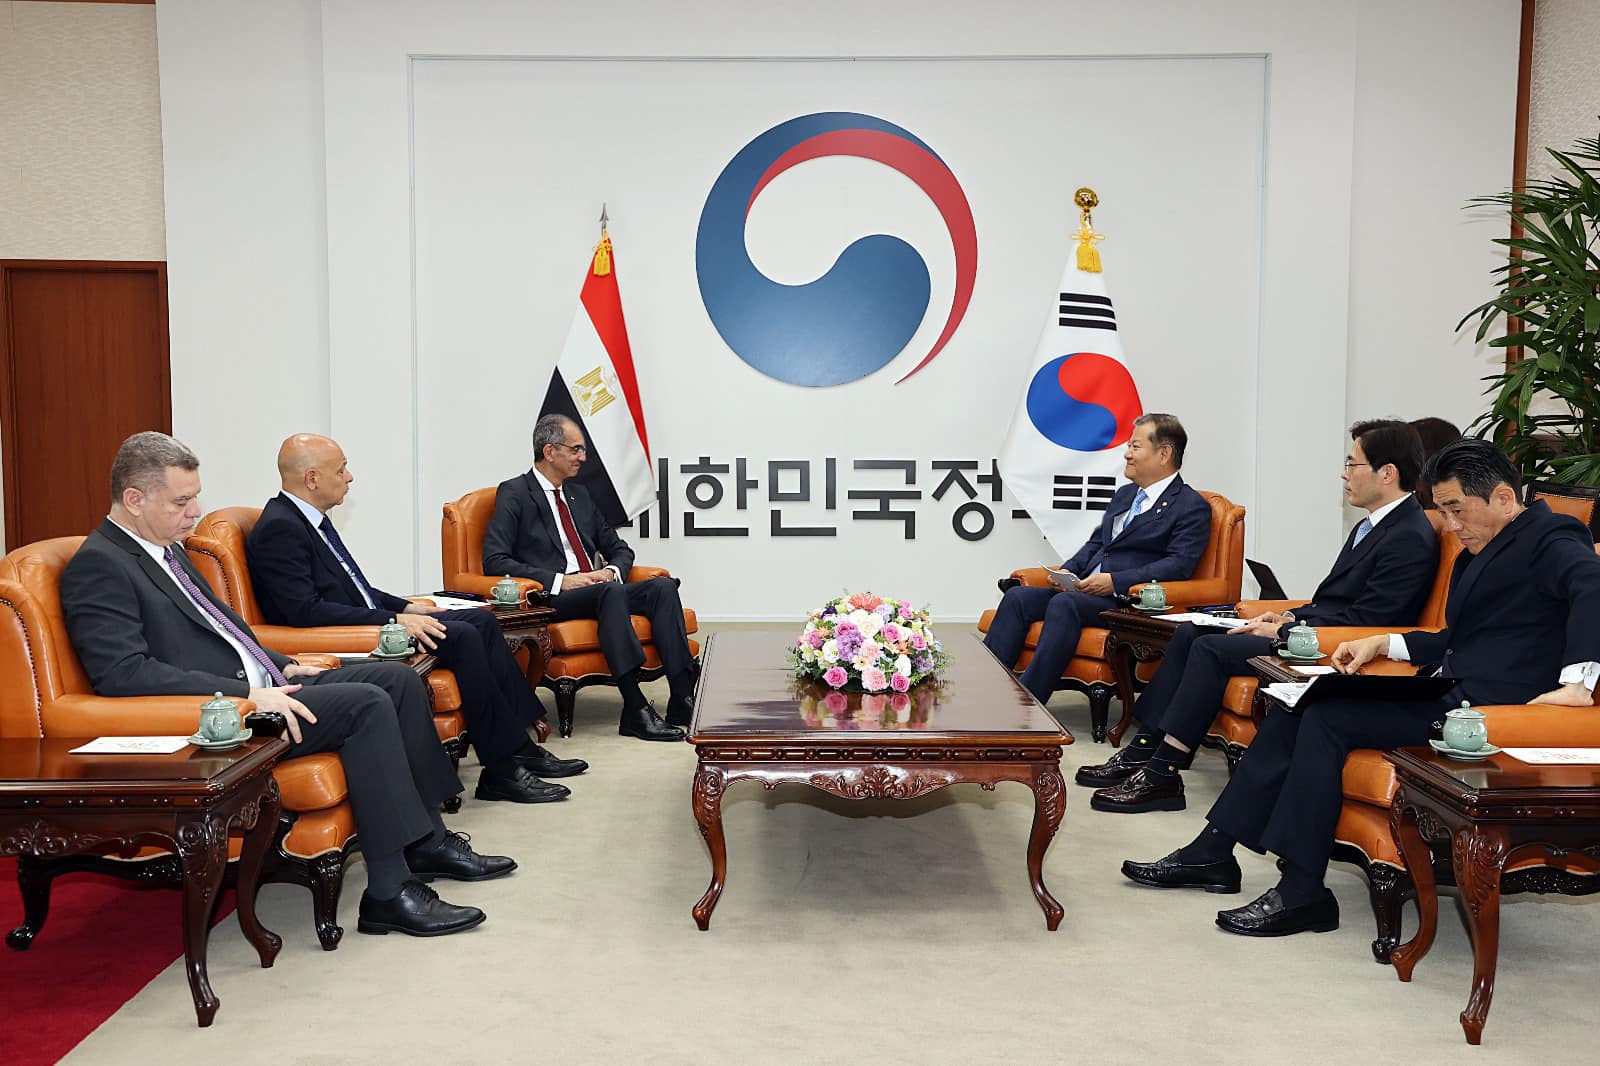 وزير الاتصالات يبحث مع شركات كورية التعاون في مجال الأمن السيبراني